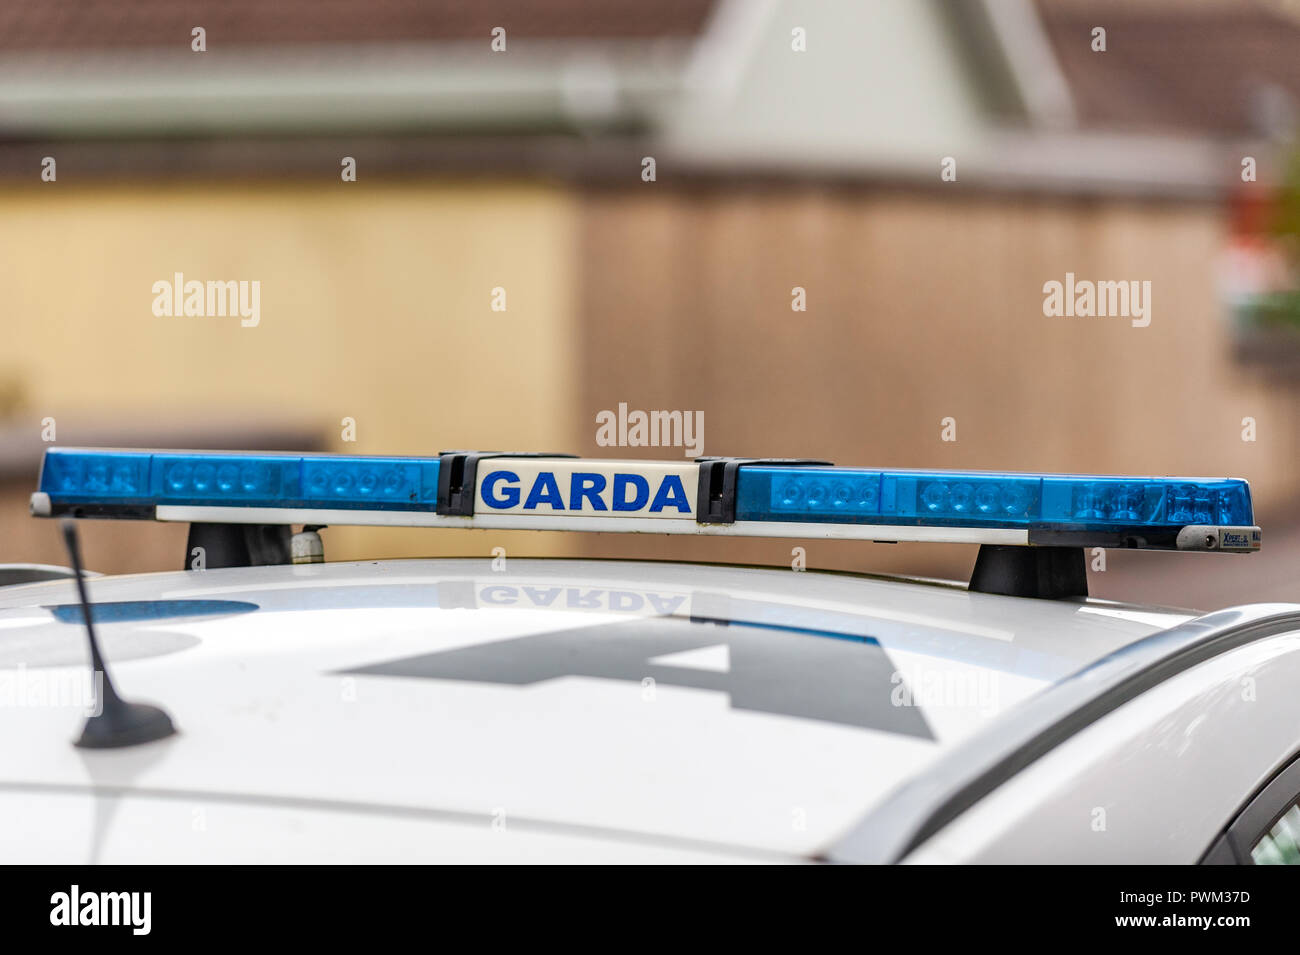 Gardasee (irische Polizei) auf einem Streifenwagen in Irland. Stockfoto